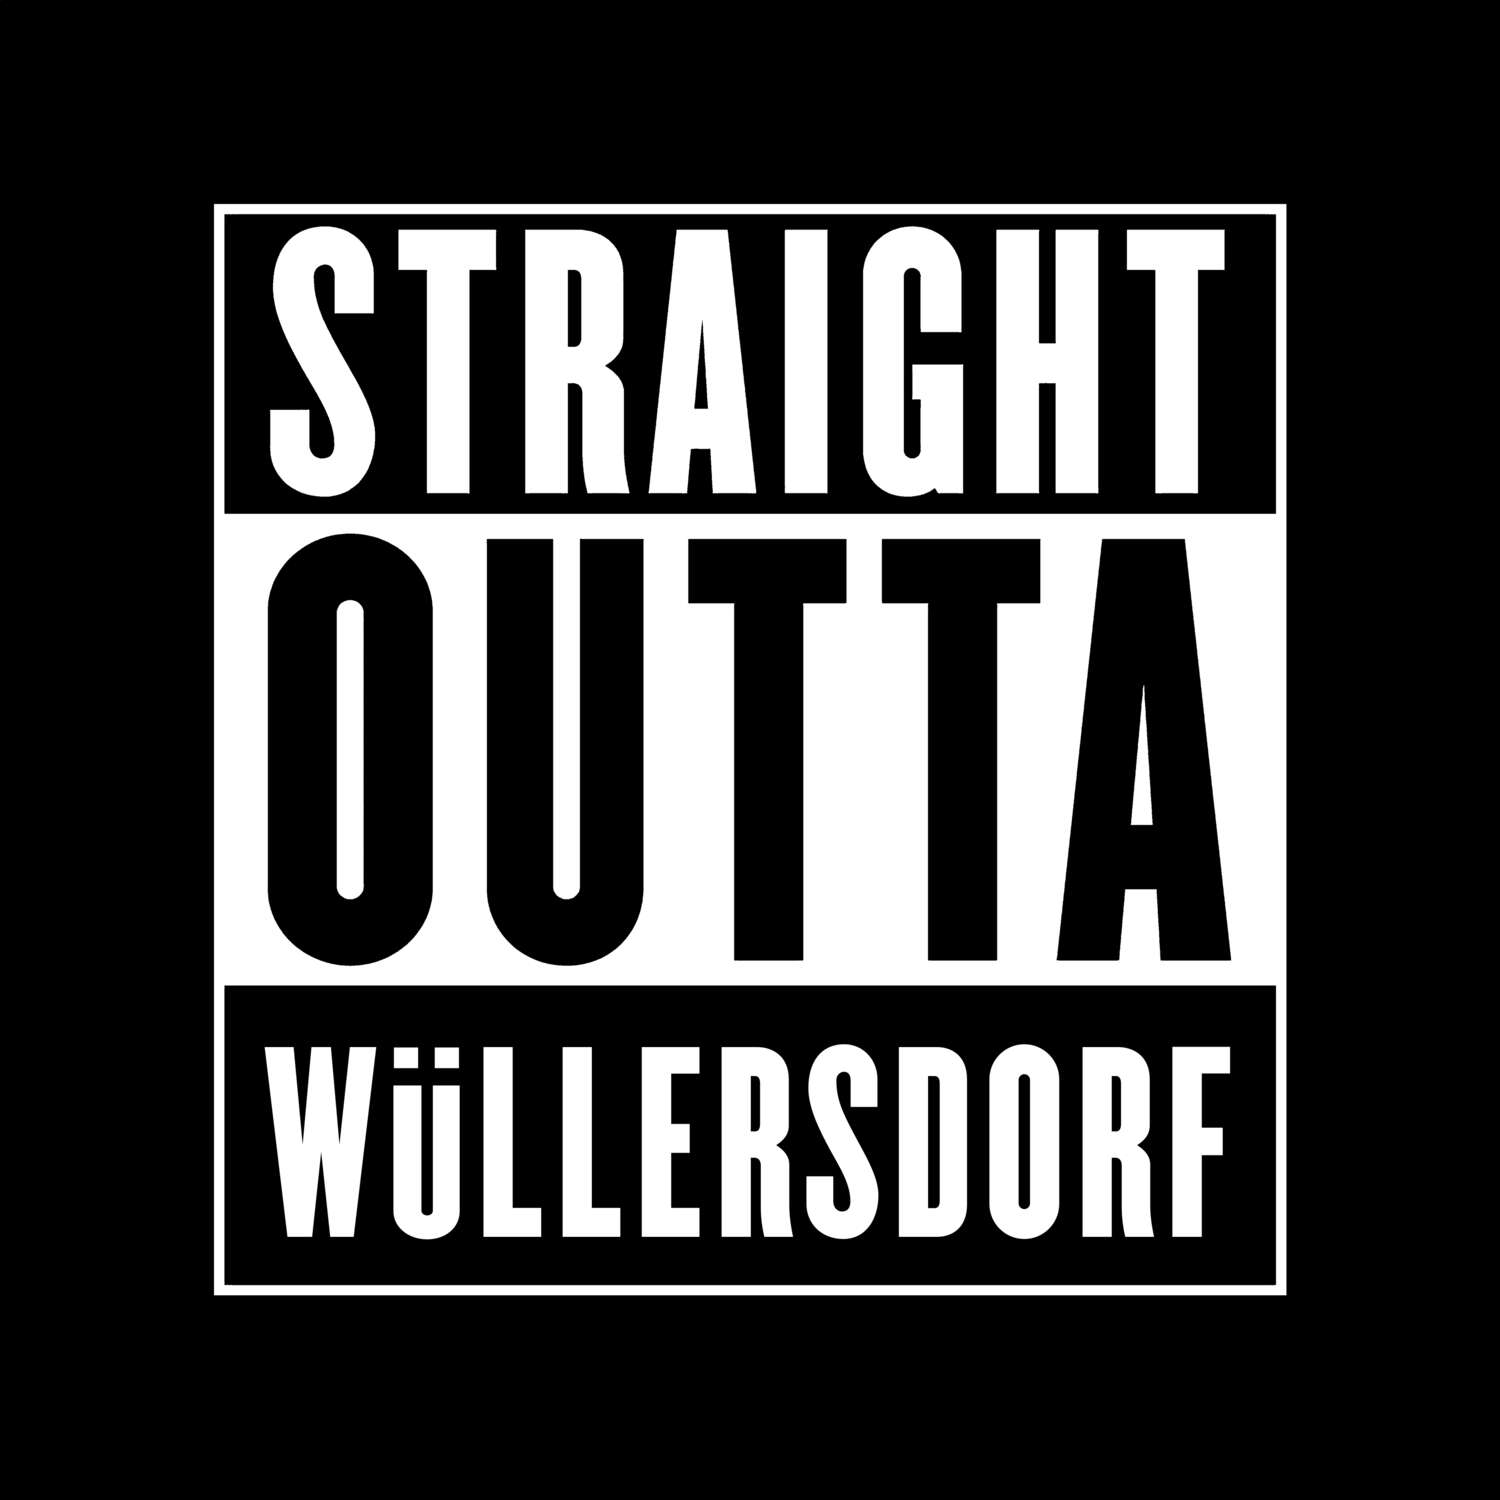 Wüllersdorf T-Shirt »Straight Outta«